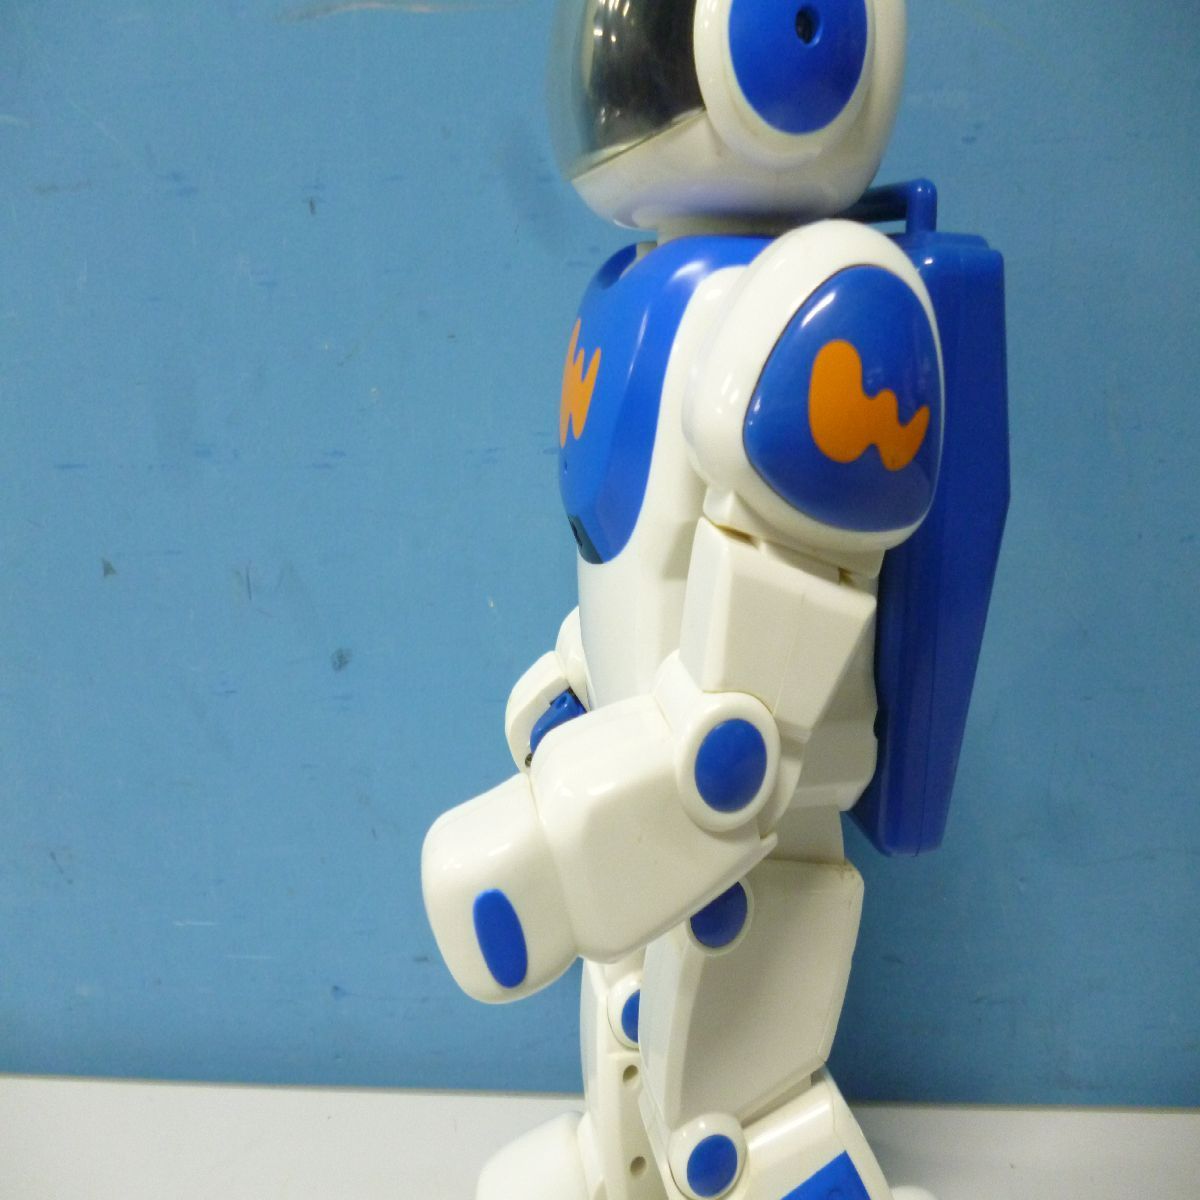 歩行確認済み】ファミロボ W-BOT ウィルボ セガトイズ ロボット 人型 